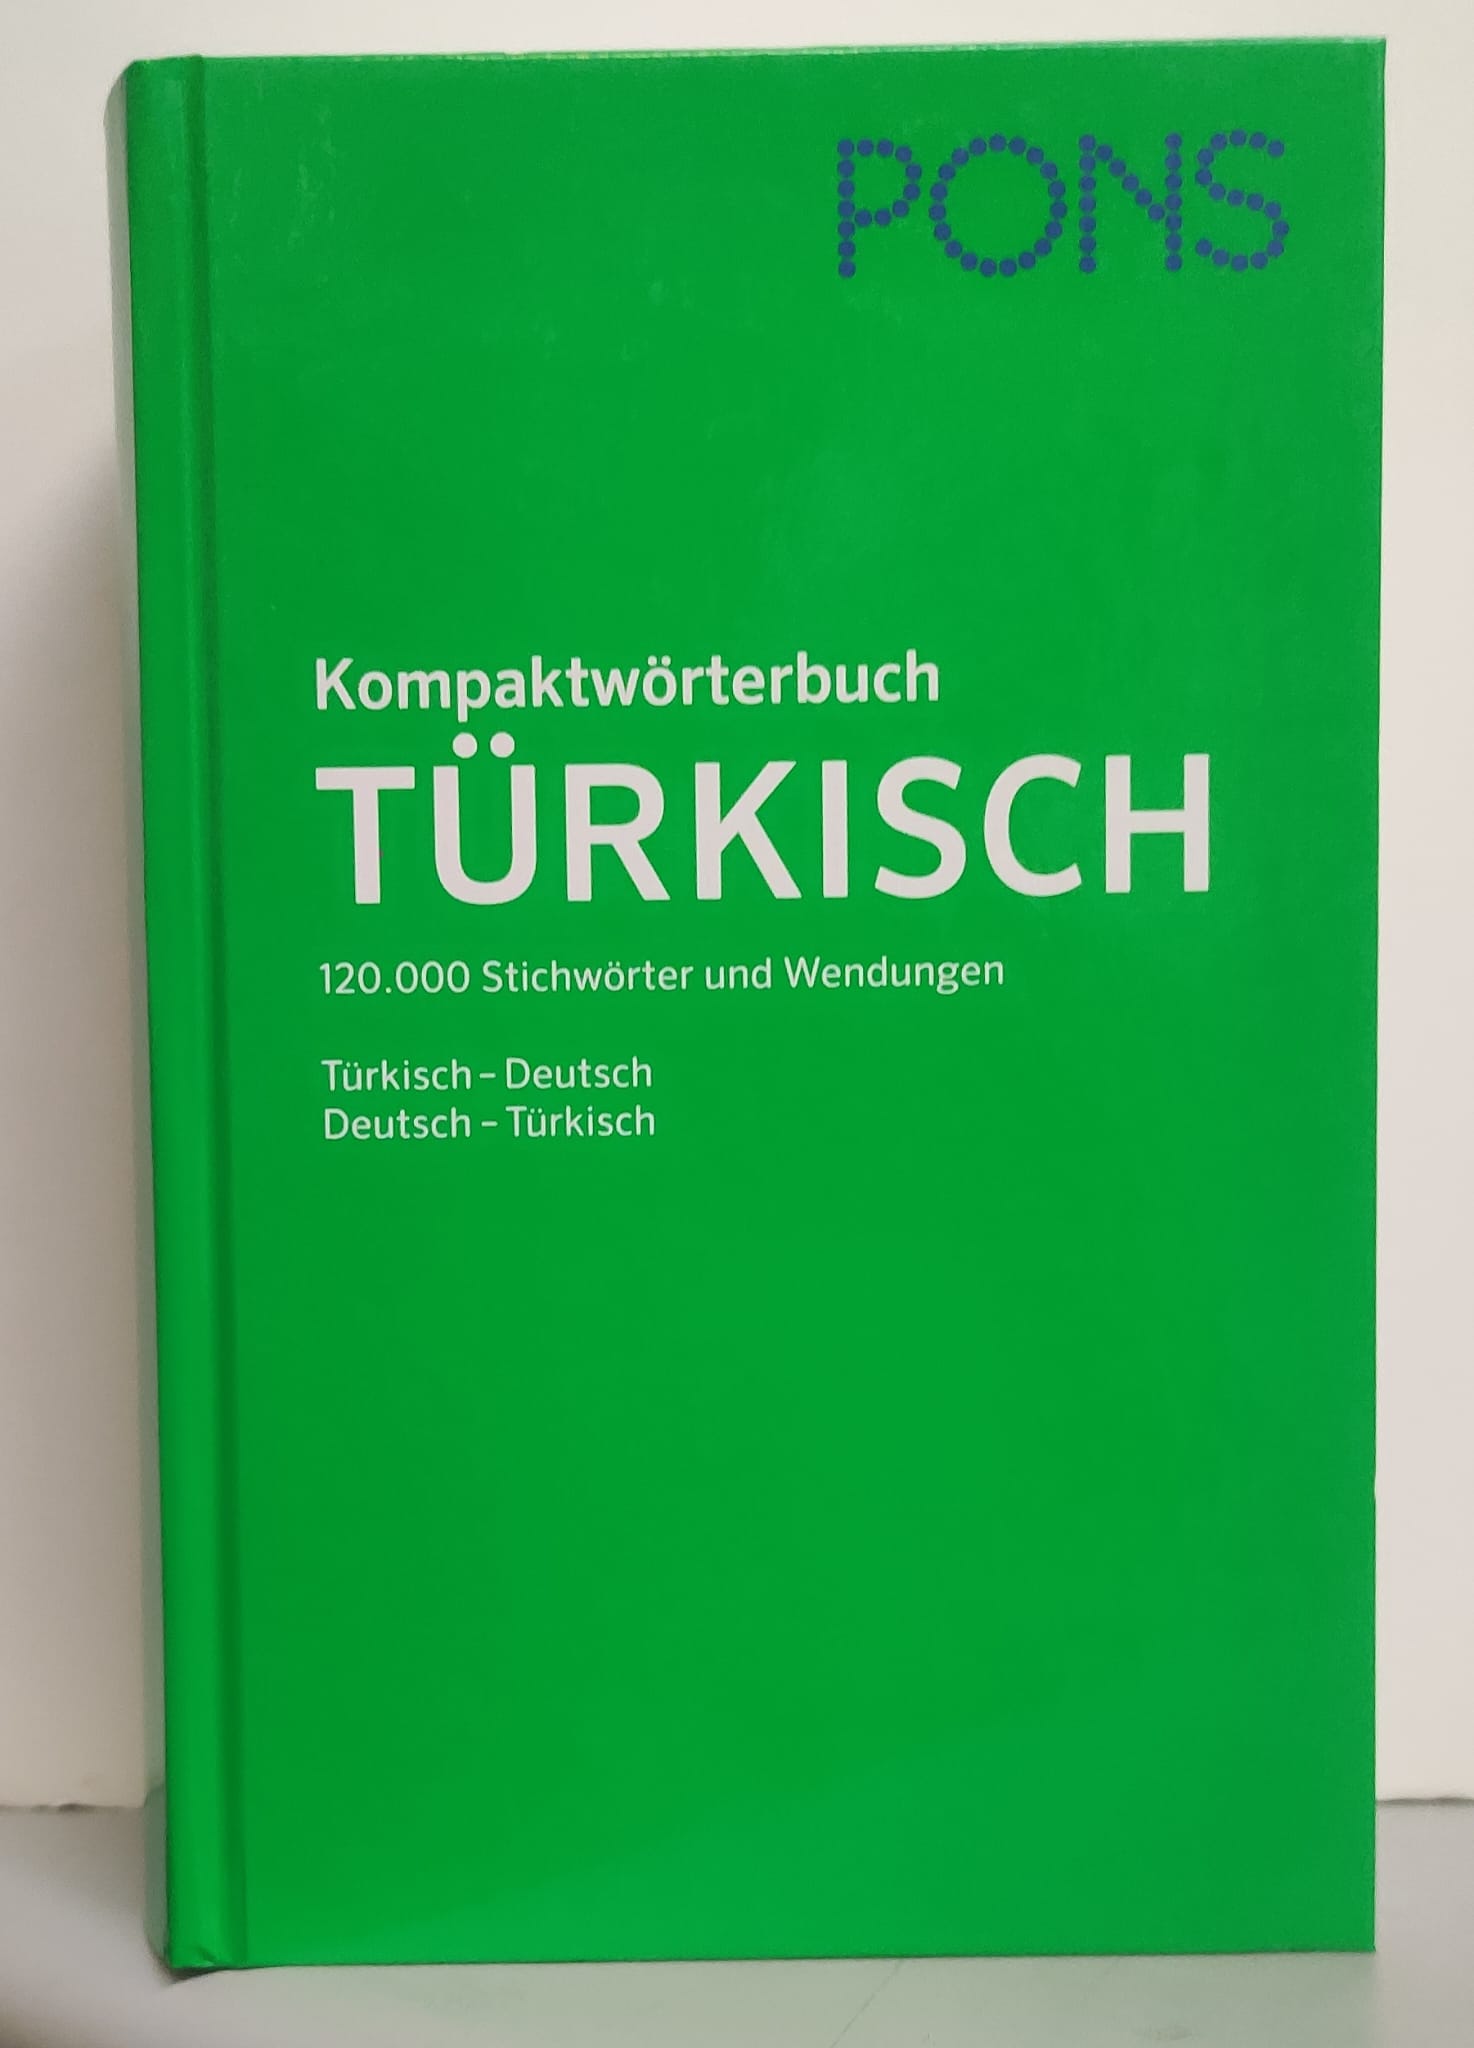 PONS%20Kompaktwörterbuch%20Türkisch%20-%20Türkisch-Deutsch%20/%20Deutsch-Türkisch